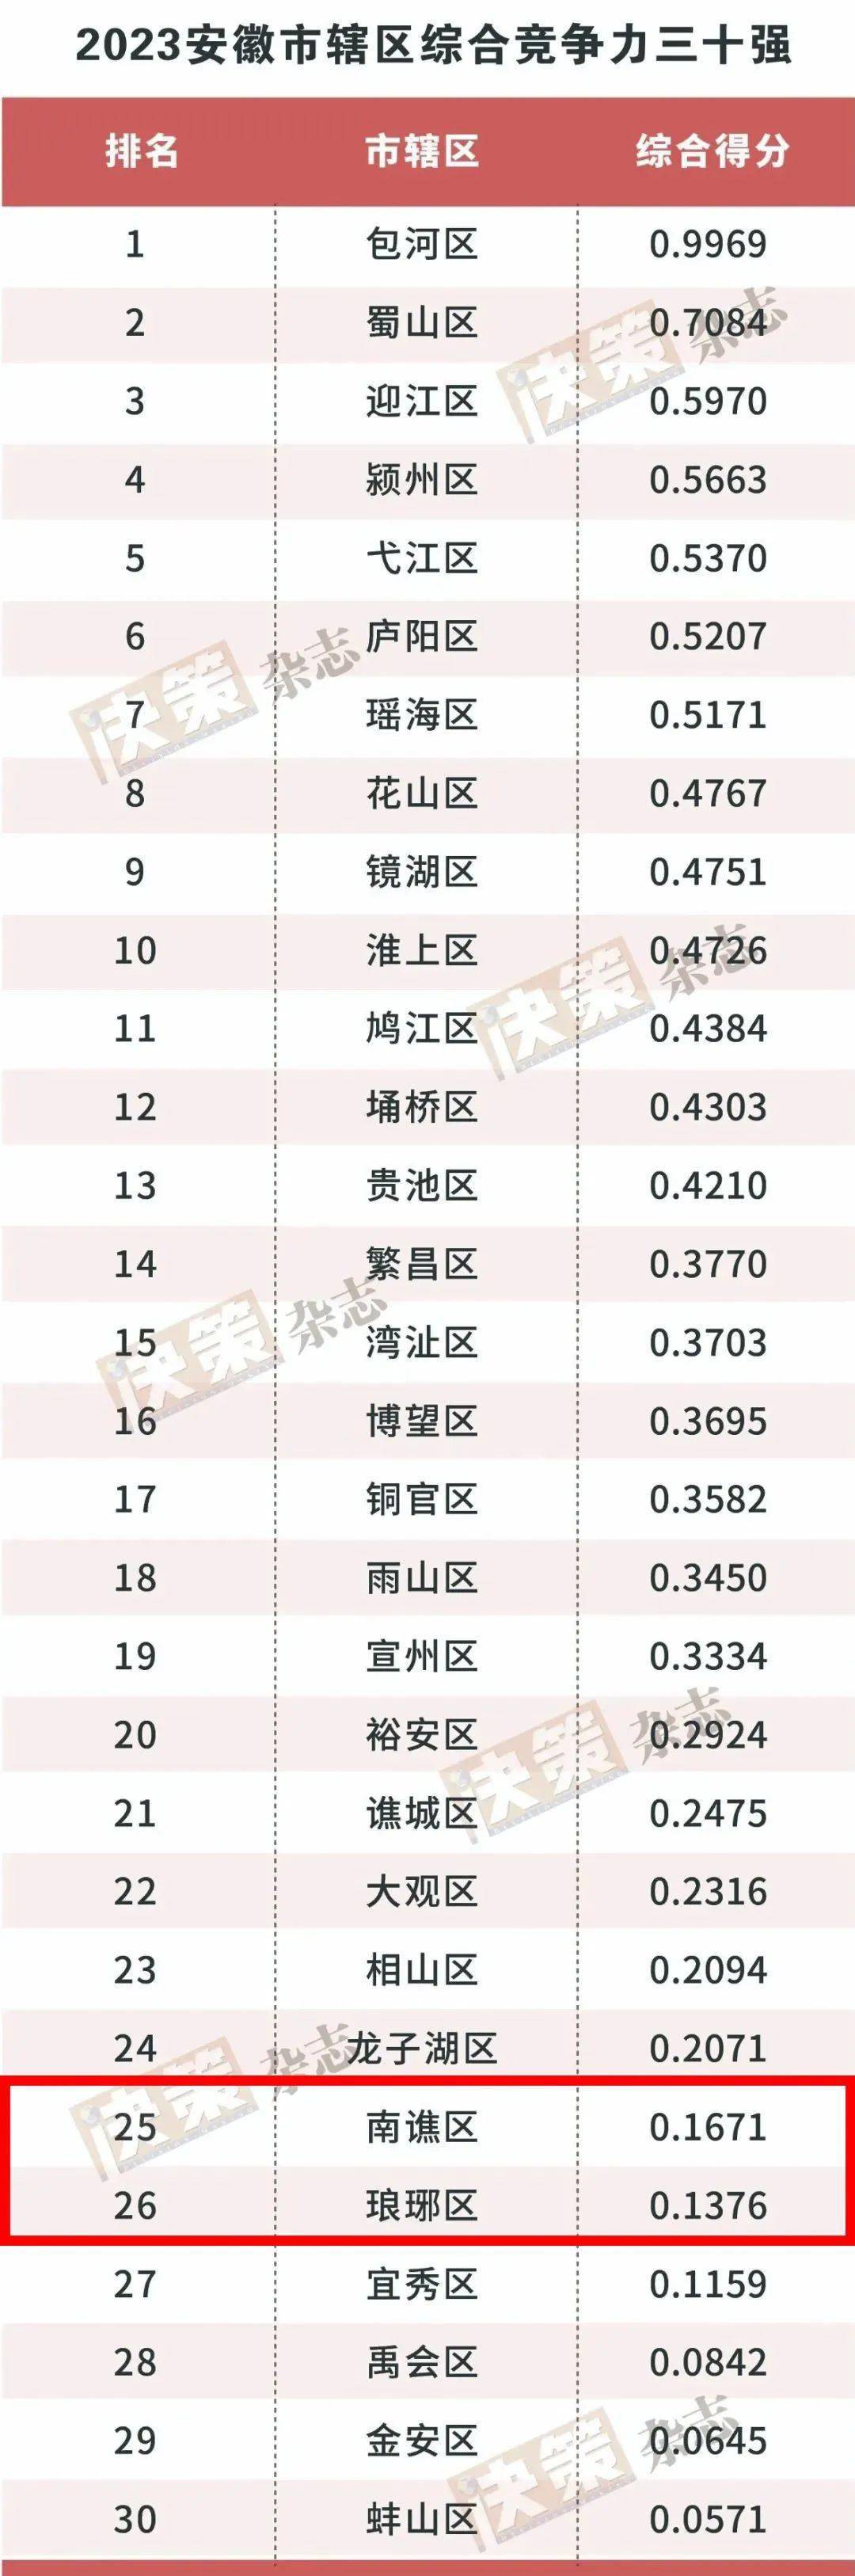 安徽排行榜_2023年上半年安徽各市GDP排行榜亳州反超蚌埠安庆增速最慢